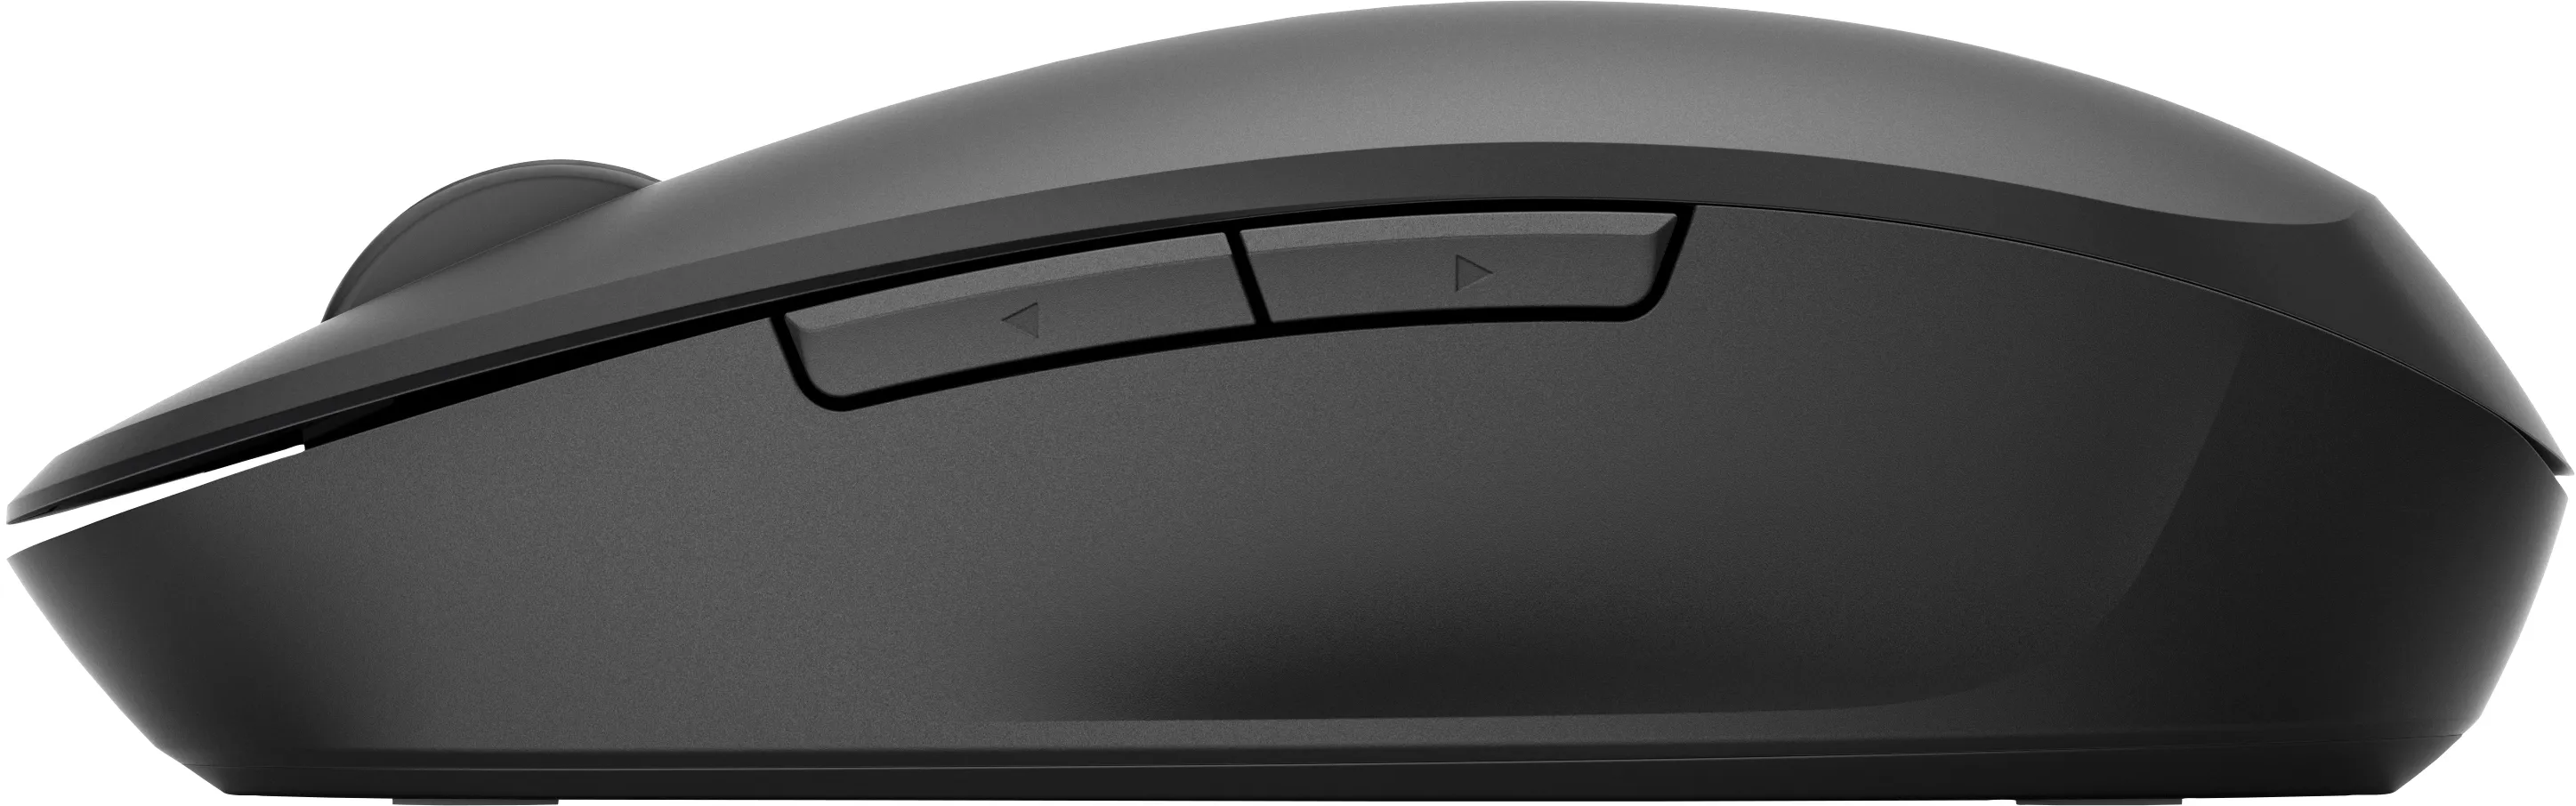 Vente HP Dual Mode Black Mouse HP au meilleur prix - visuel 8